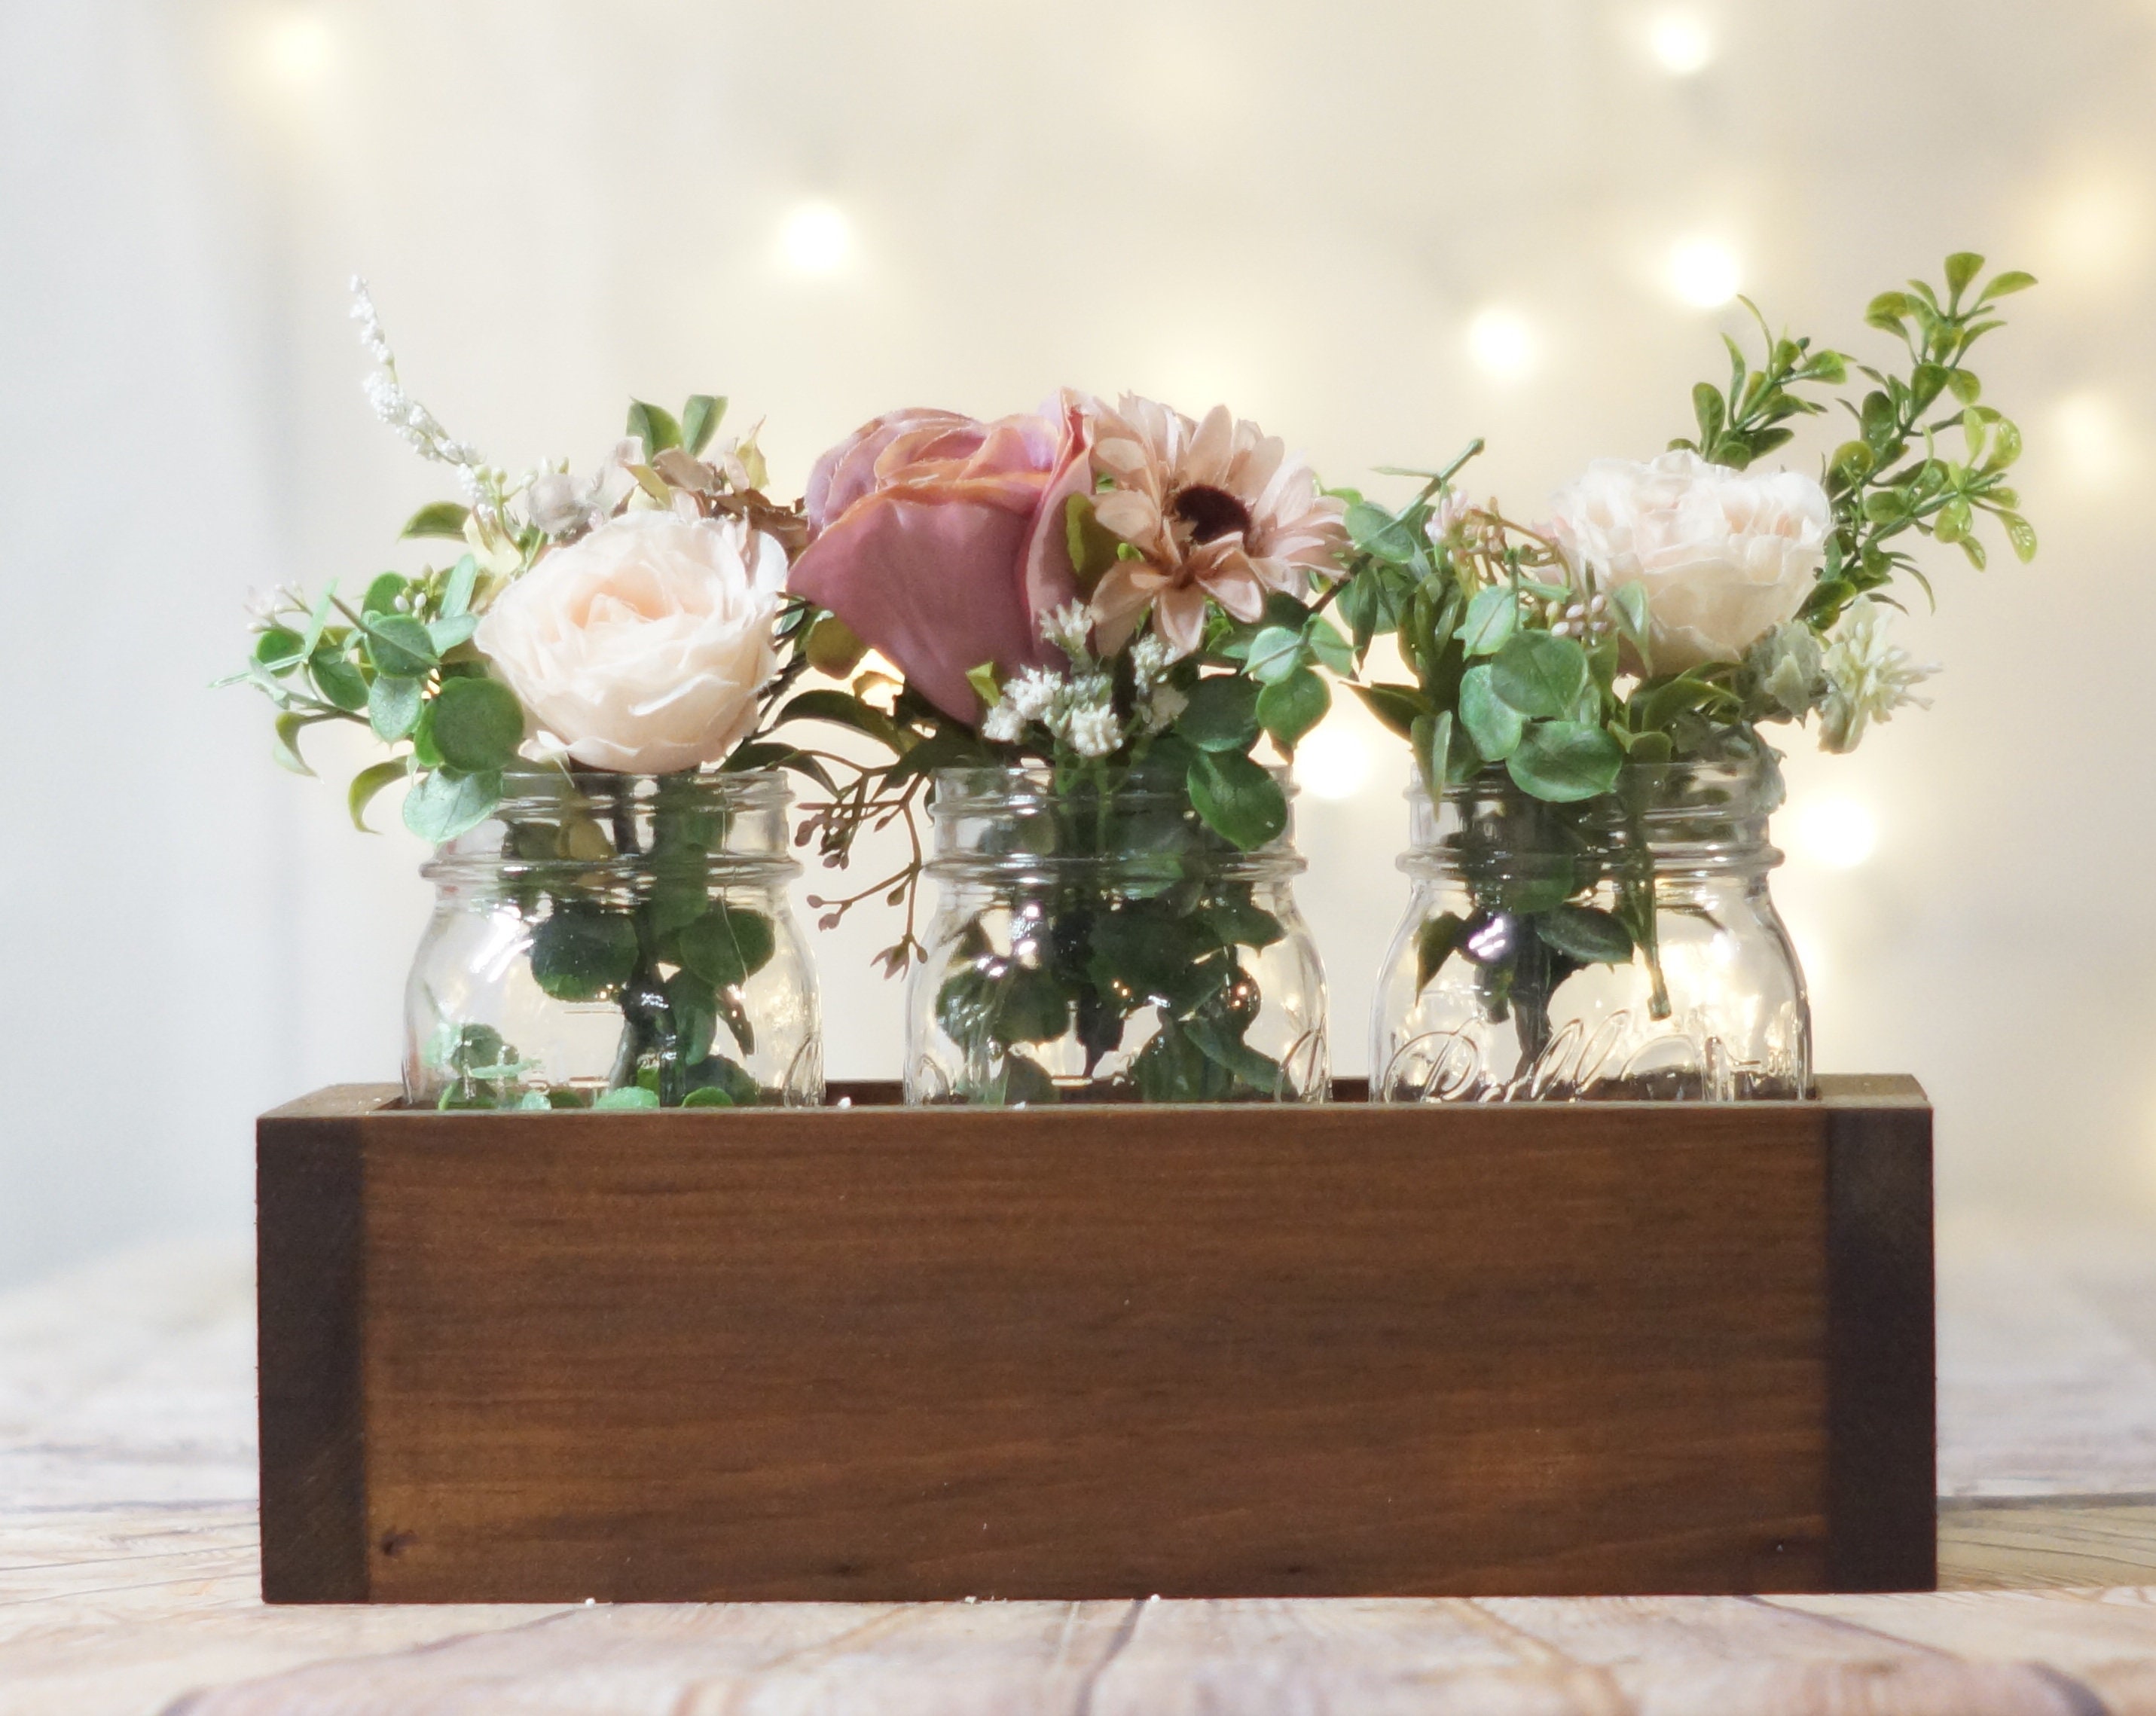 10 Flower Box Centerpieces  Flower box centerpiece, Wedding centerpieces, Wooden  box centerpiece